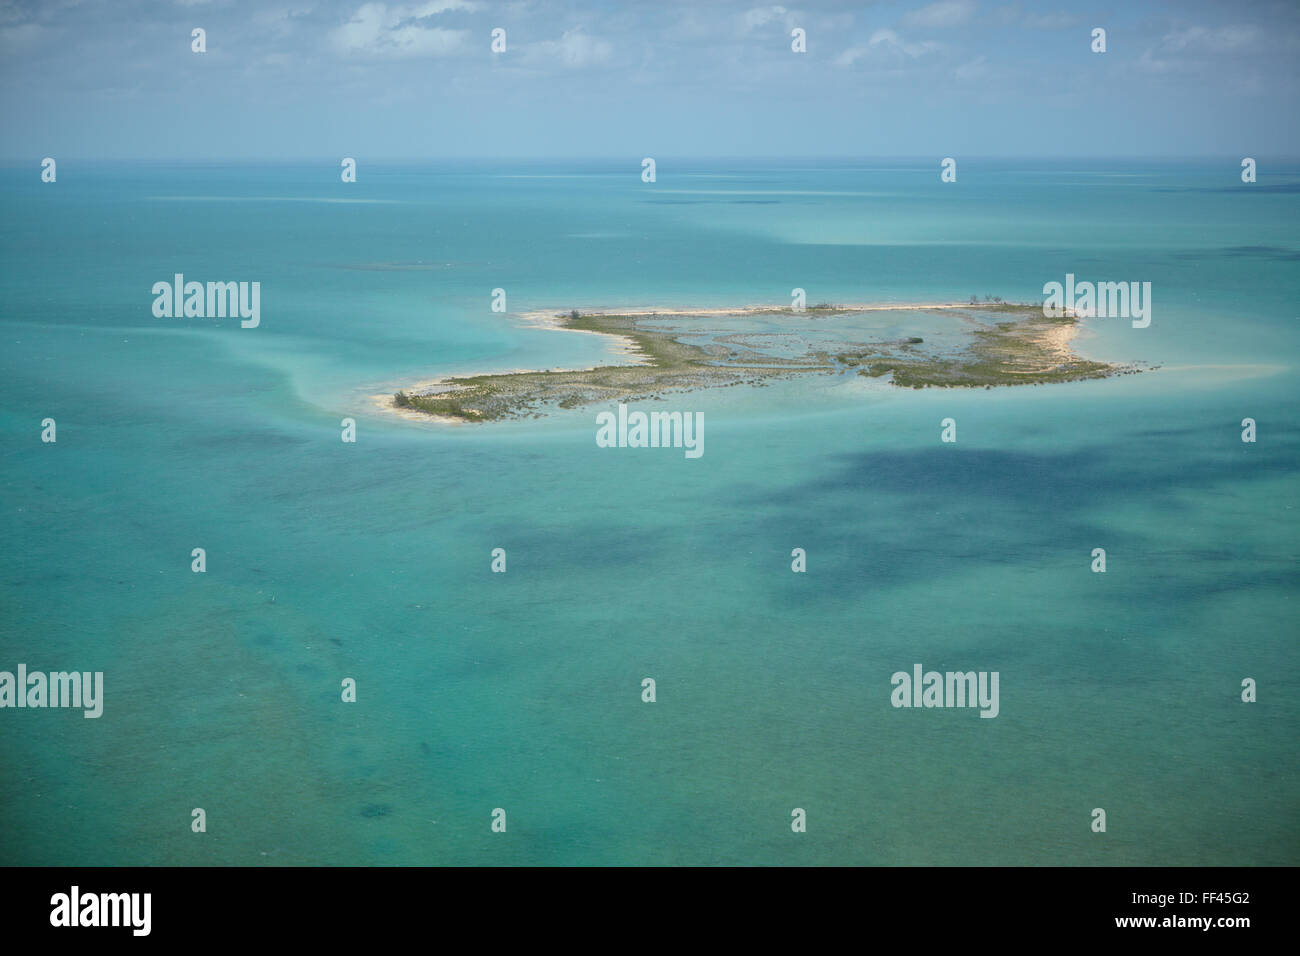 Vista aérea de una isla habitada de las Bahamas. Foto de stock